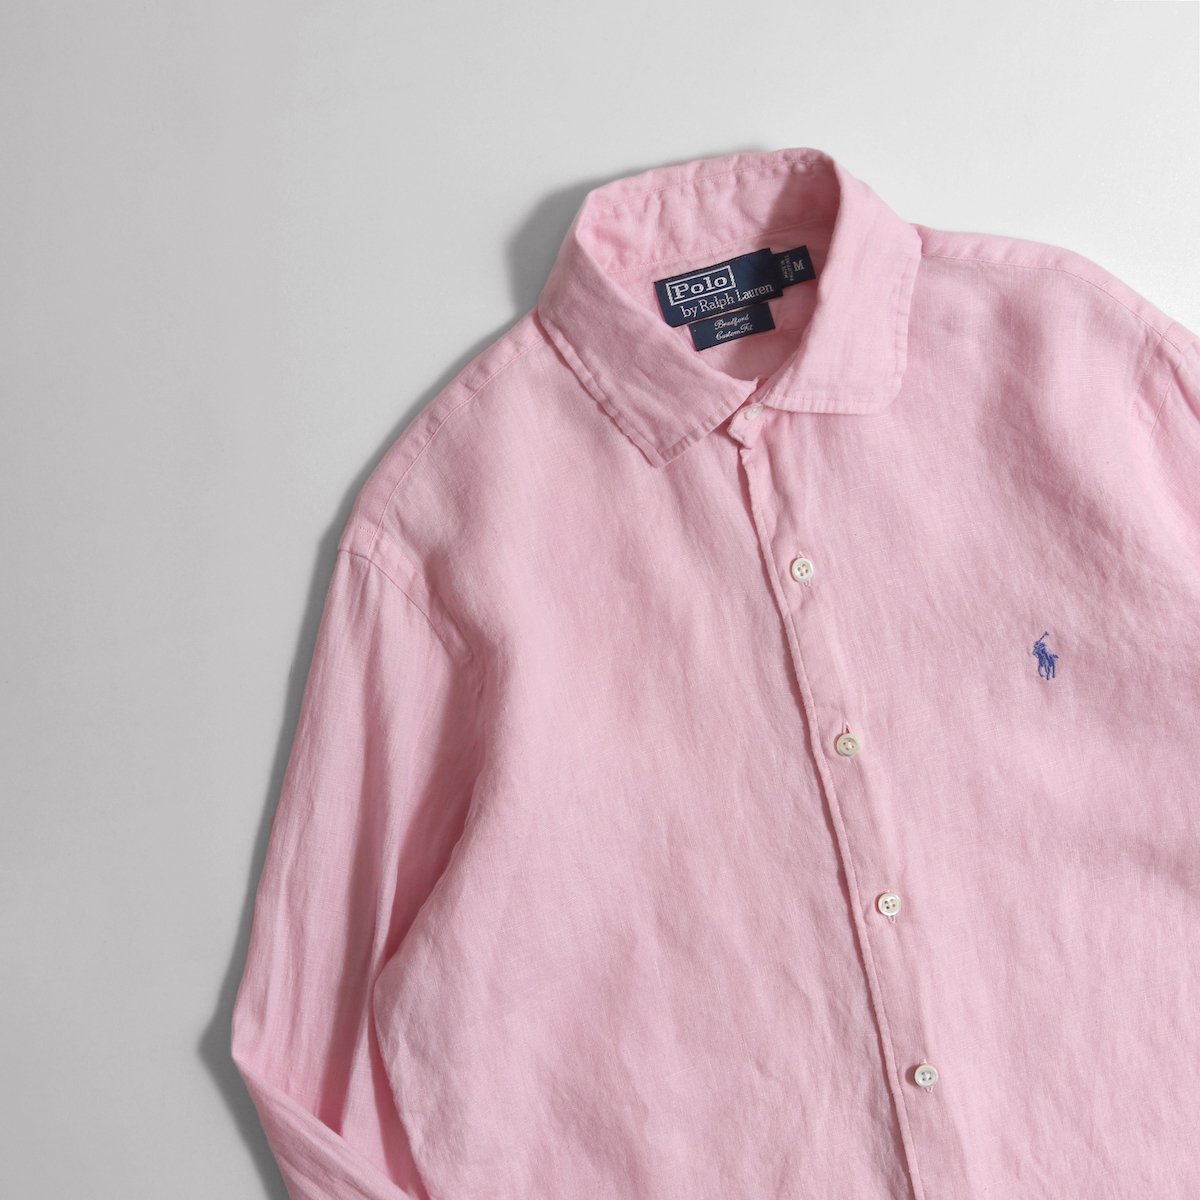 日本全国送料無料 Ralph Lauren✳ラルフローレン リネンシャツ ピンク